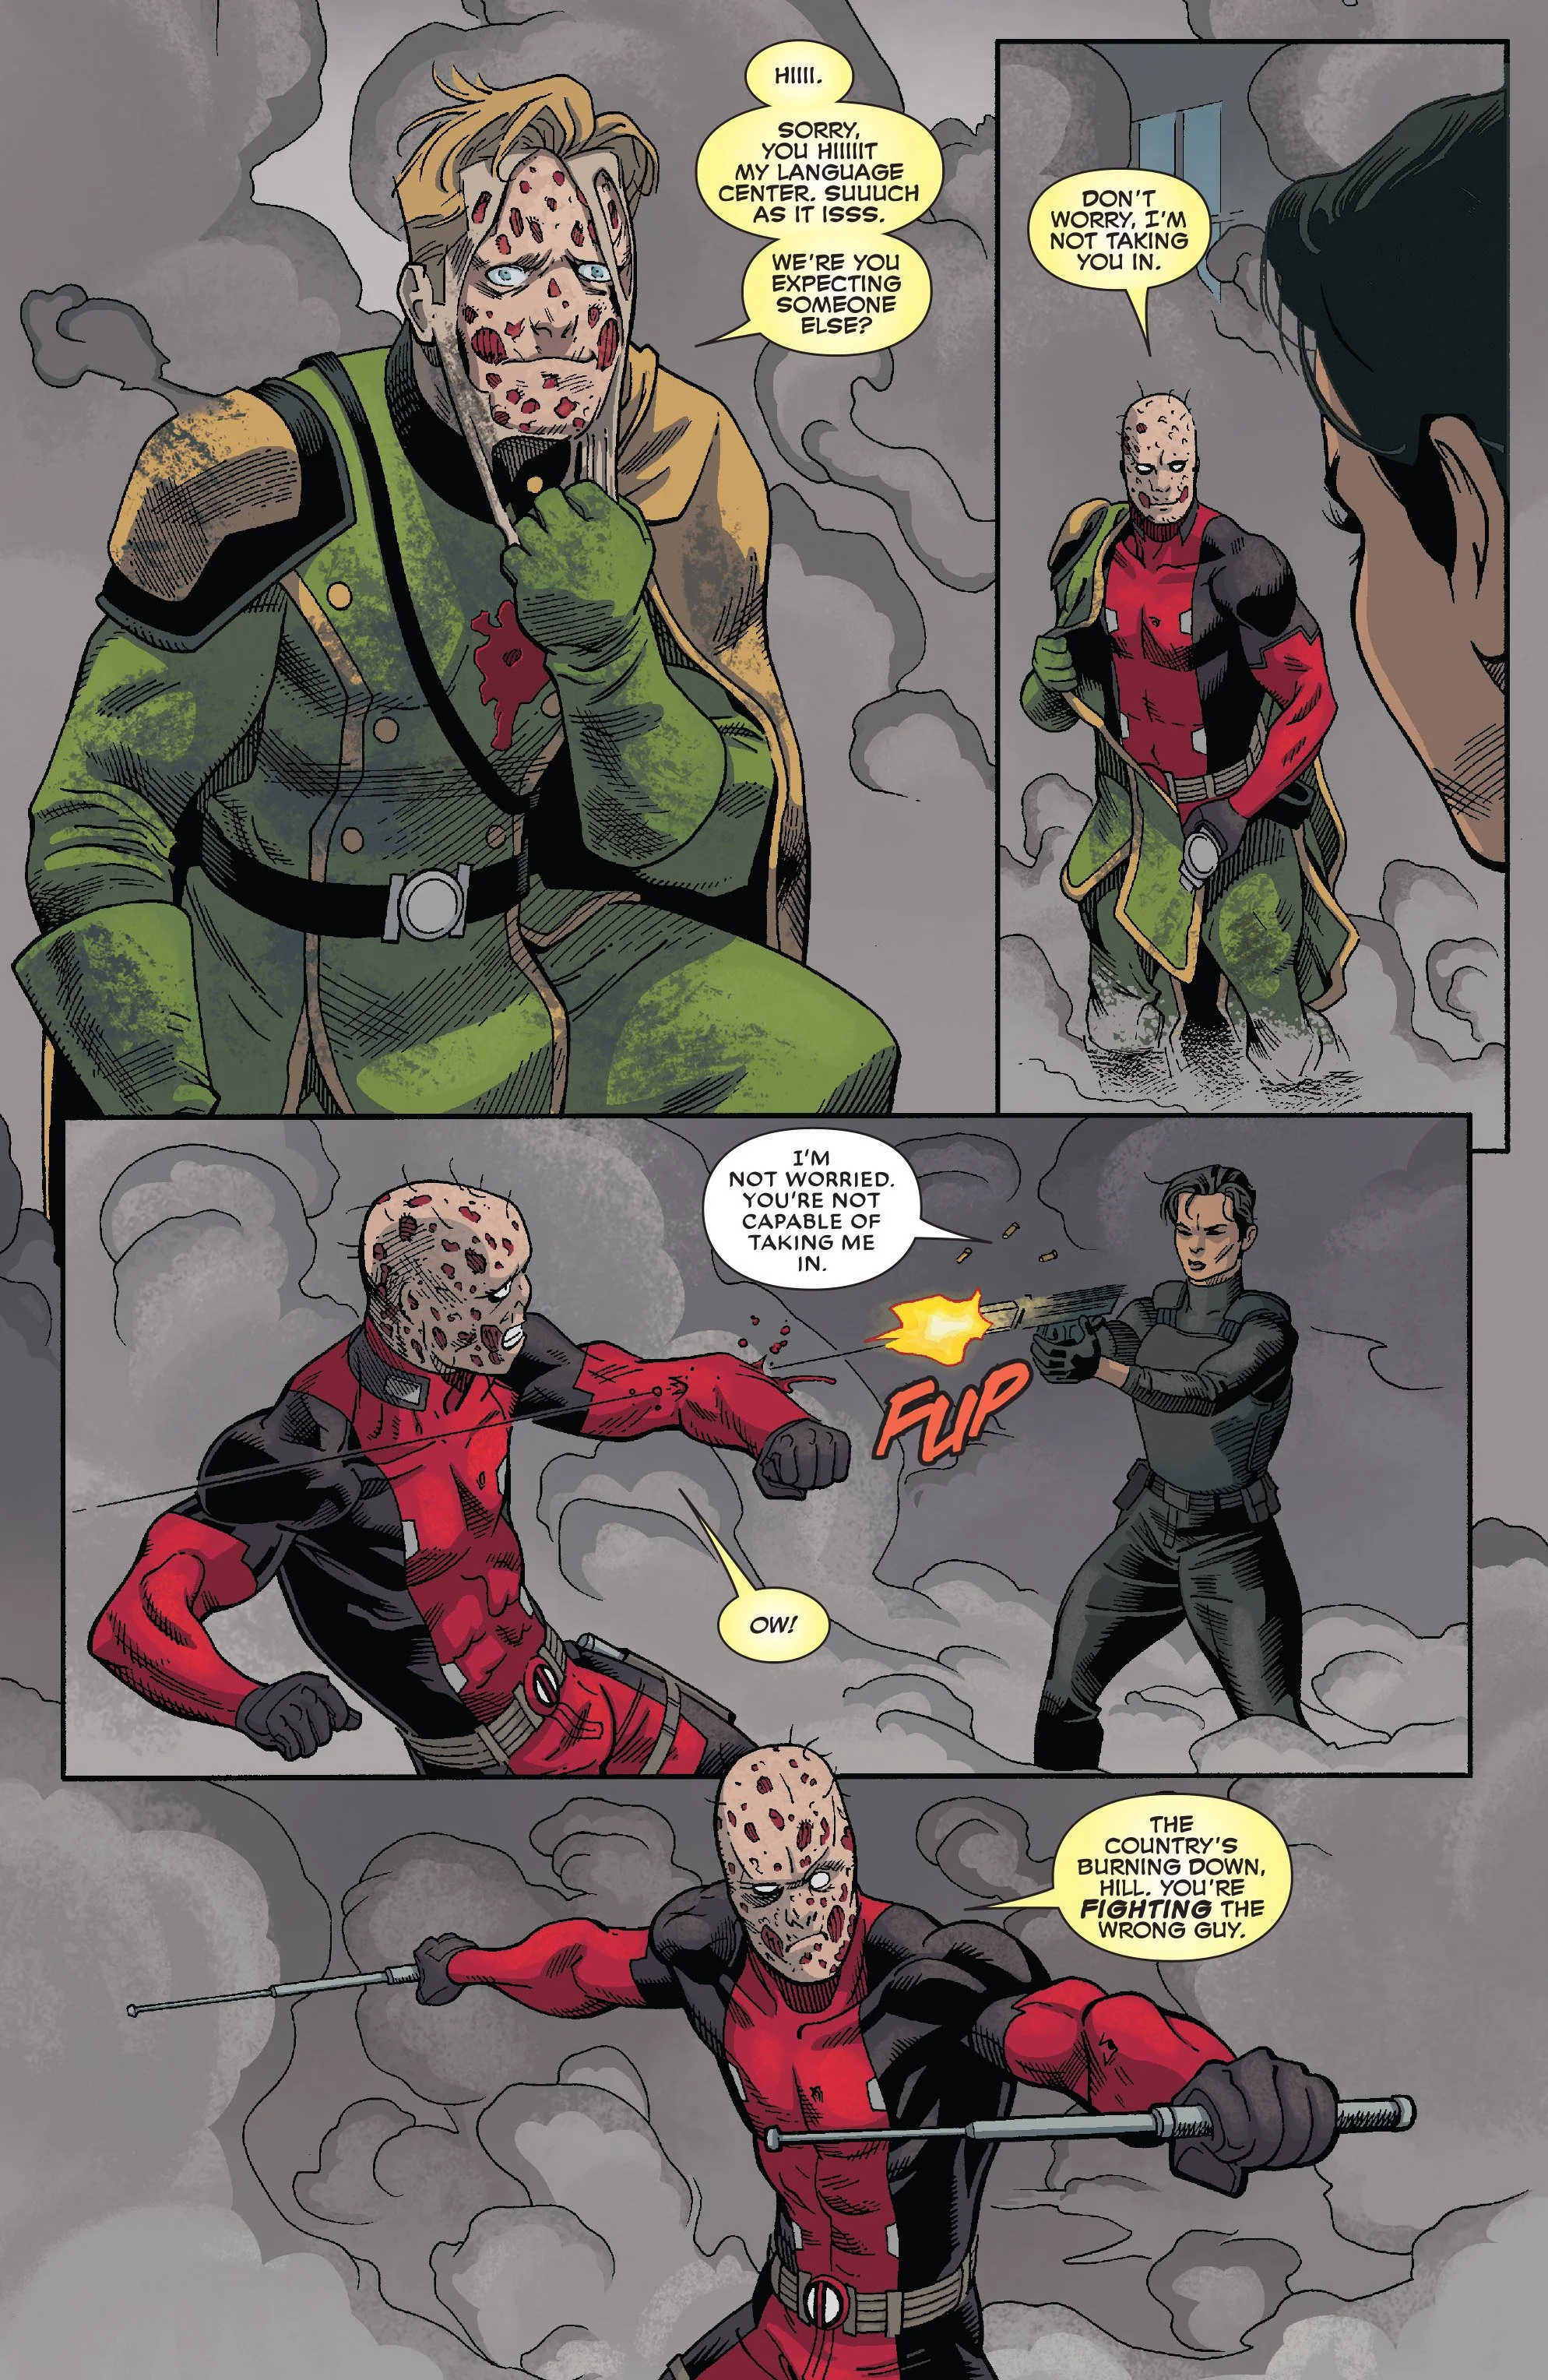 Комикс про Дэдпула подтверждает — теперь у Marvel два Капитана Америка - фото 3